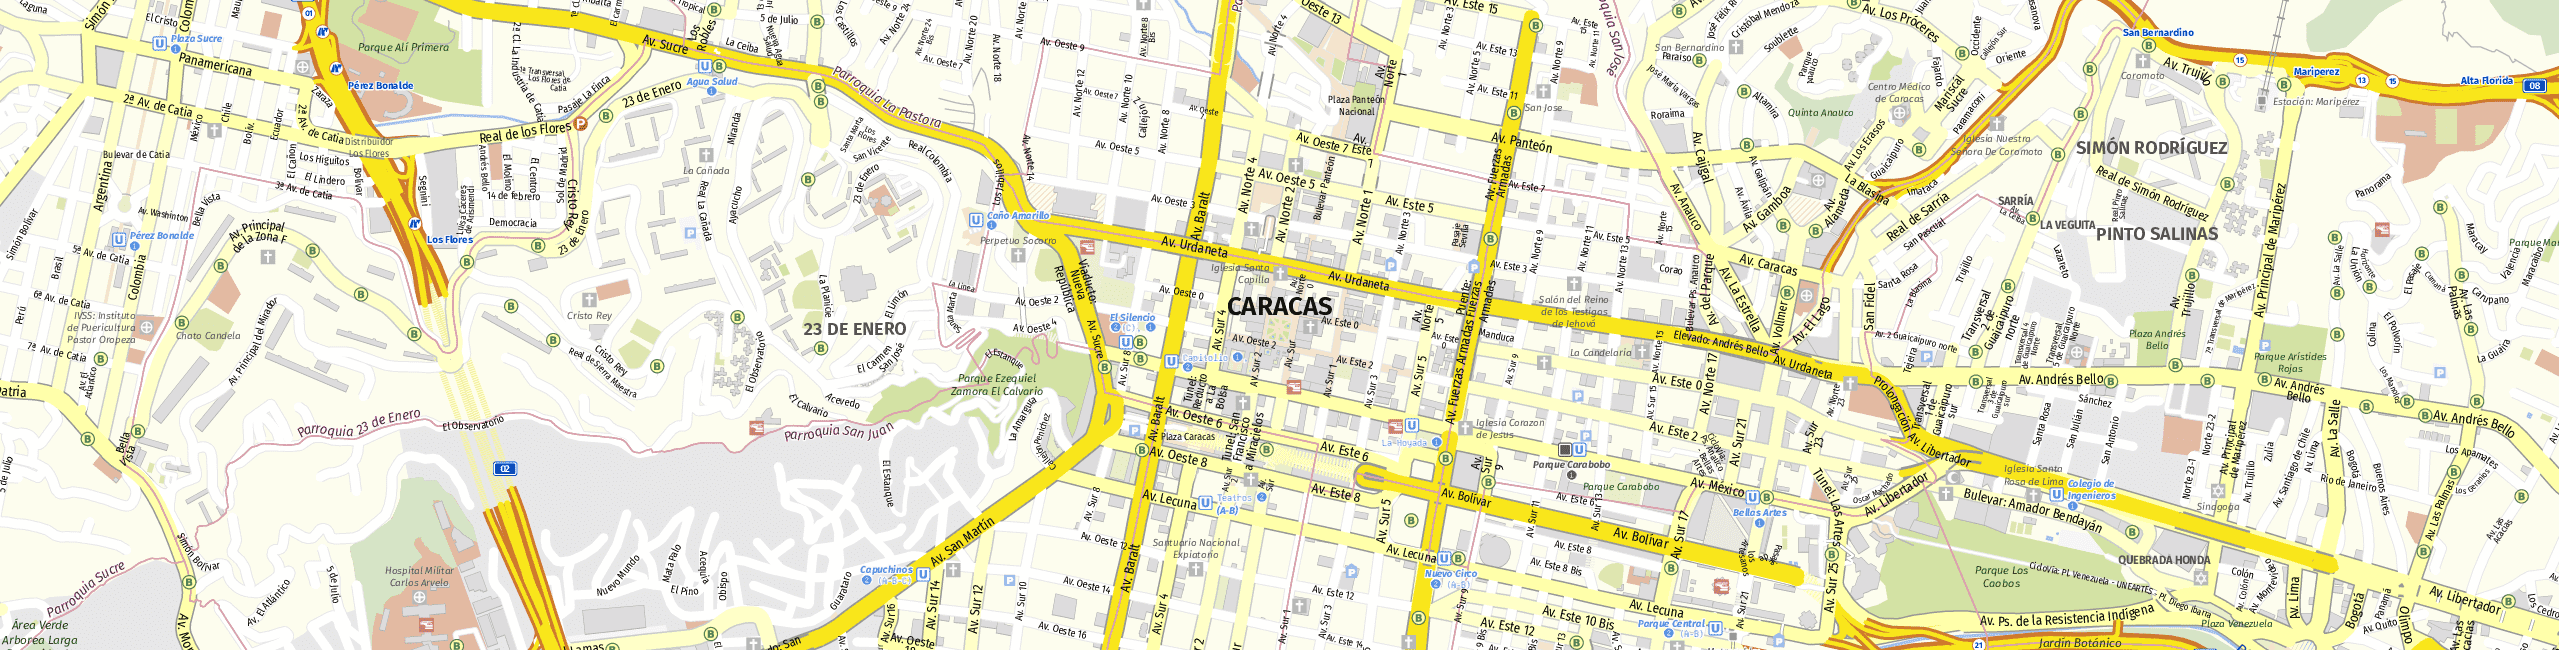 Stadtplan Caracas zum Downloaden.